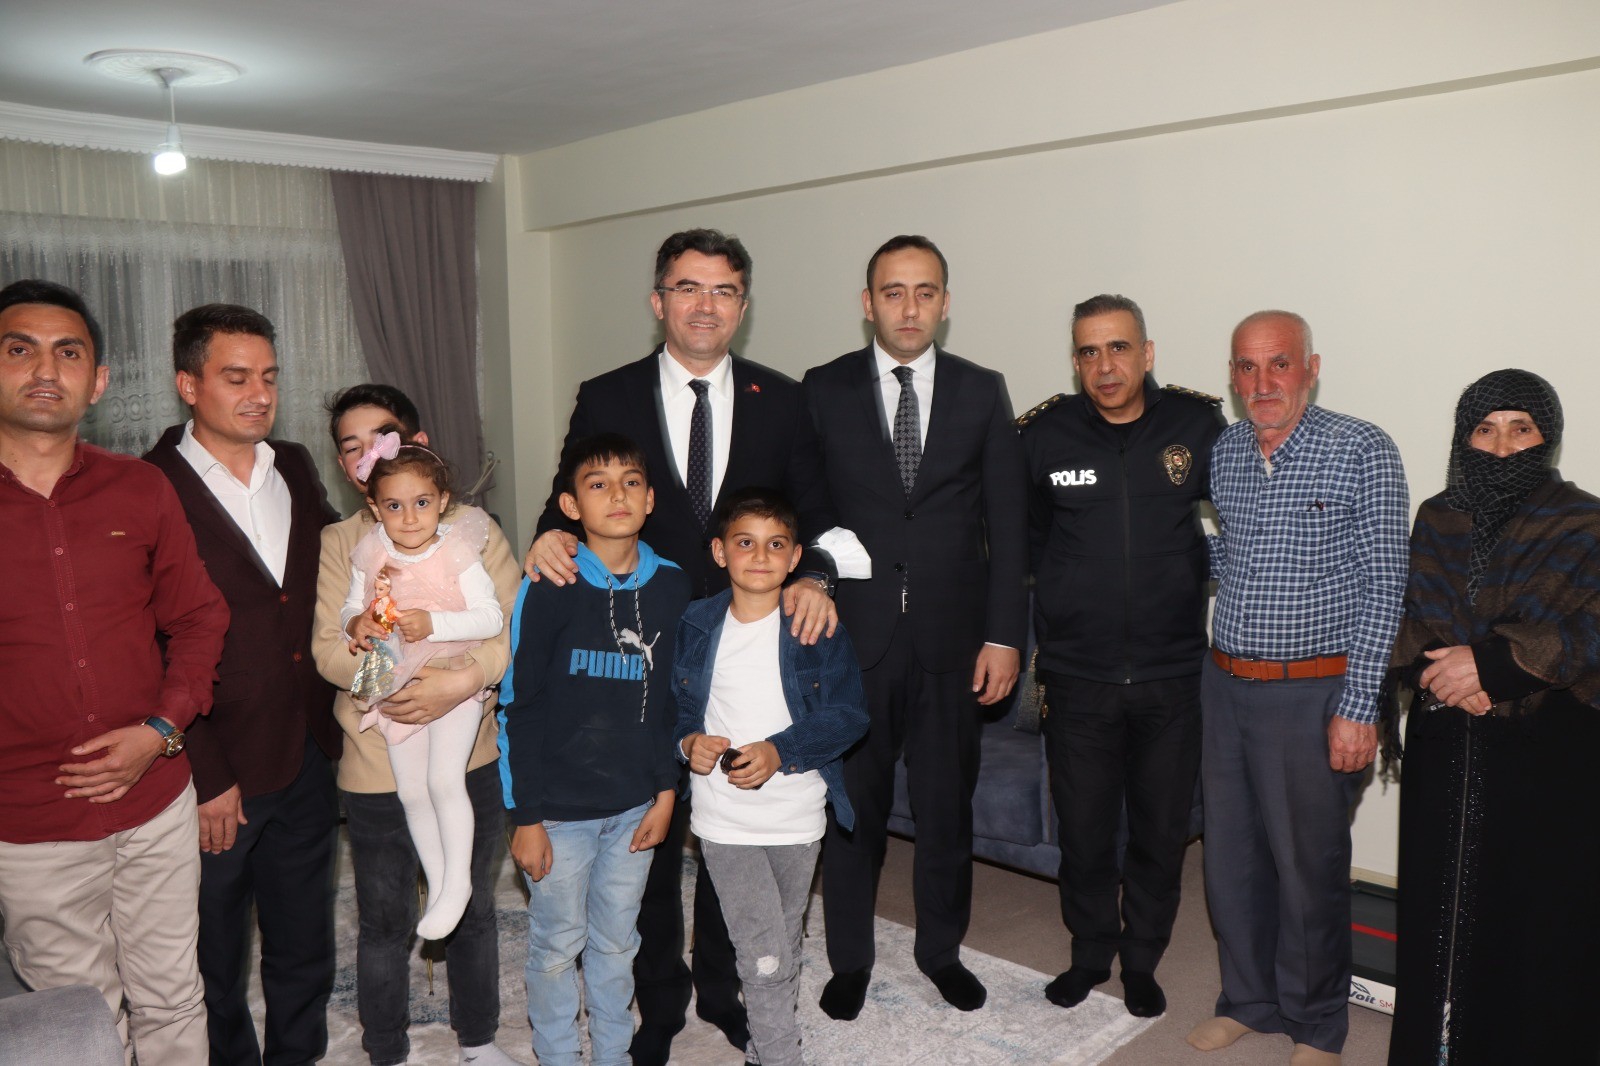 7 yaşındaki Berat, Vali'yi sosyal medyadan evlerine çaya davet etti